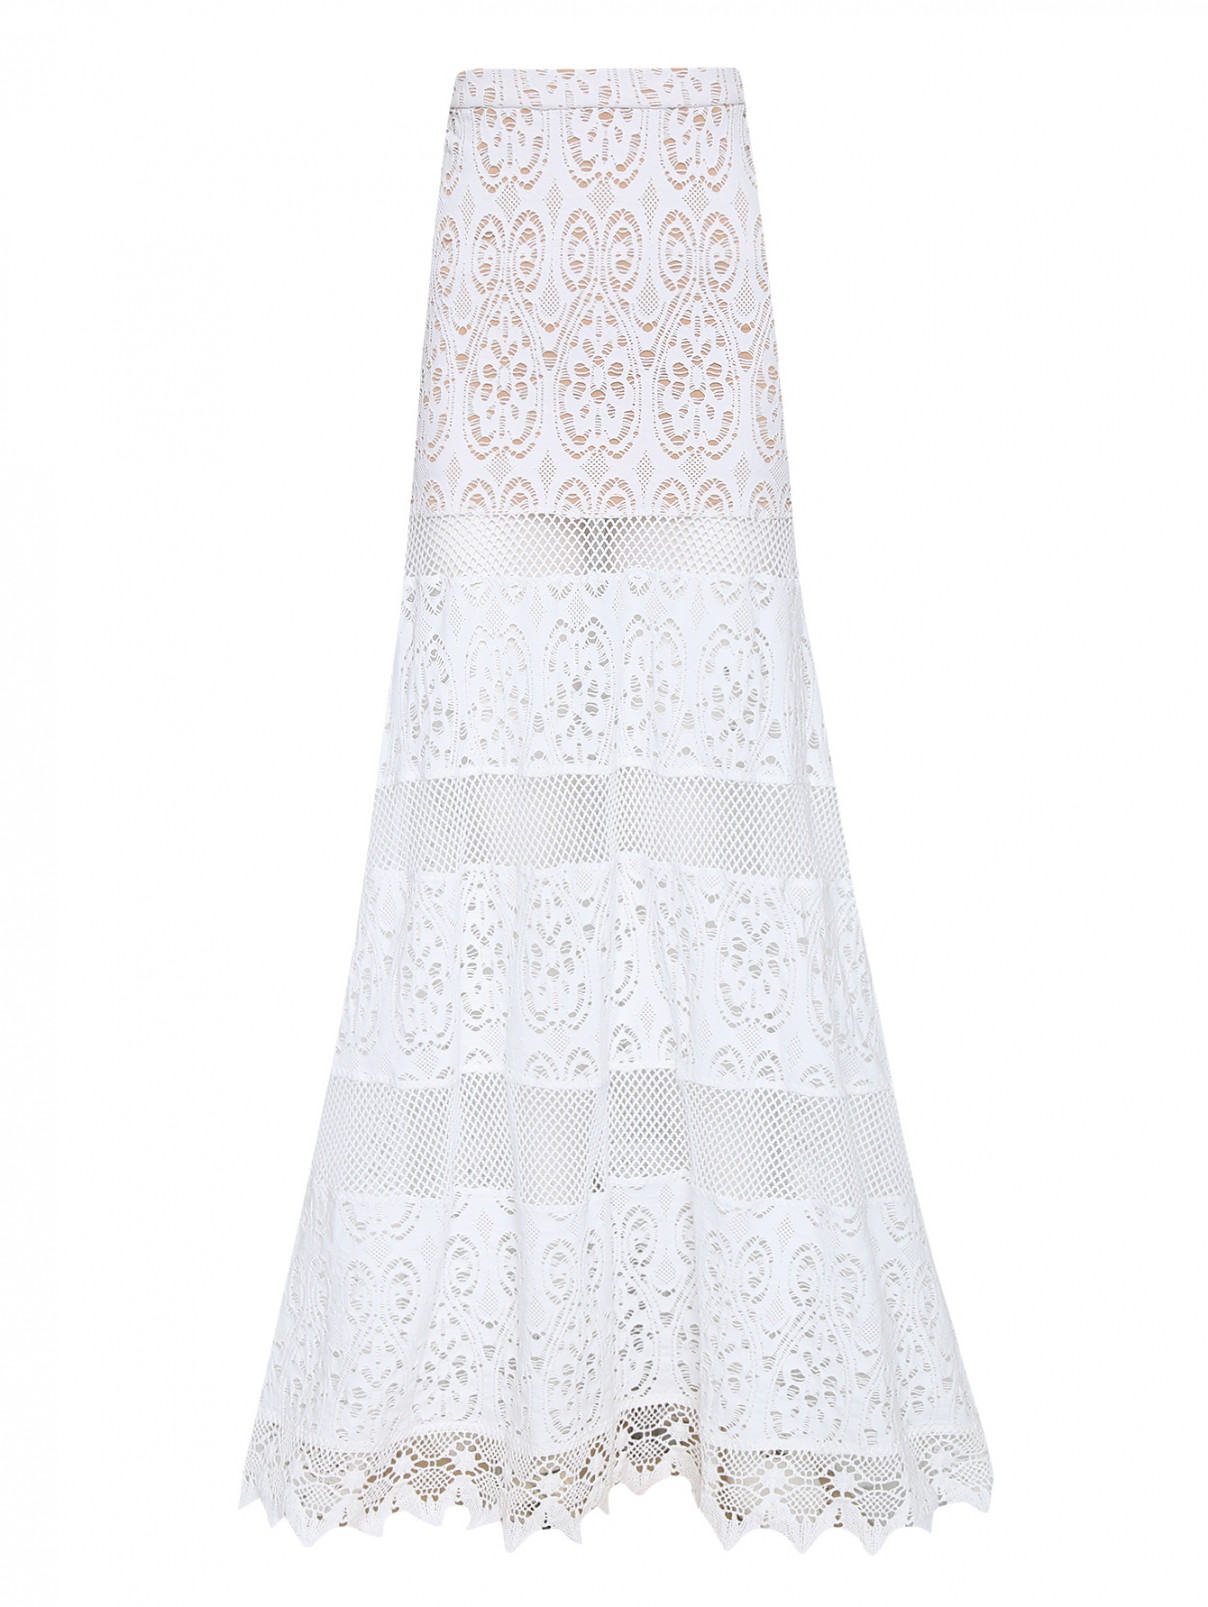 Юбка-макси из хлопка в этническом стиле Versace 1969  –  Общий вид  – Цвет:  Белый